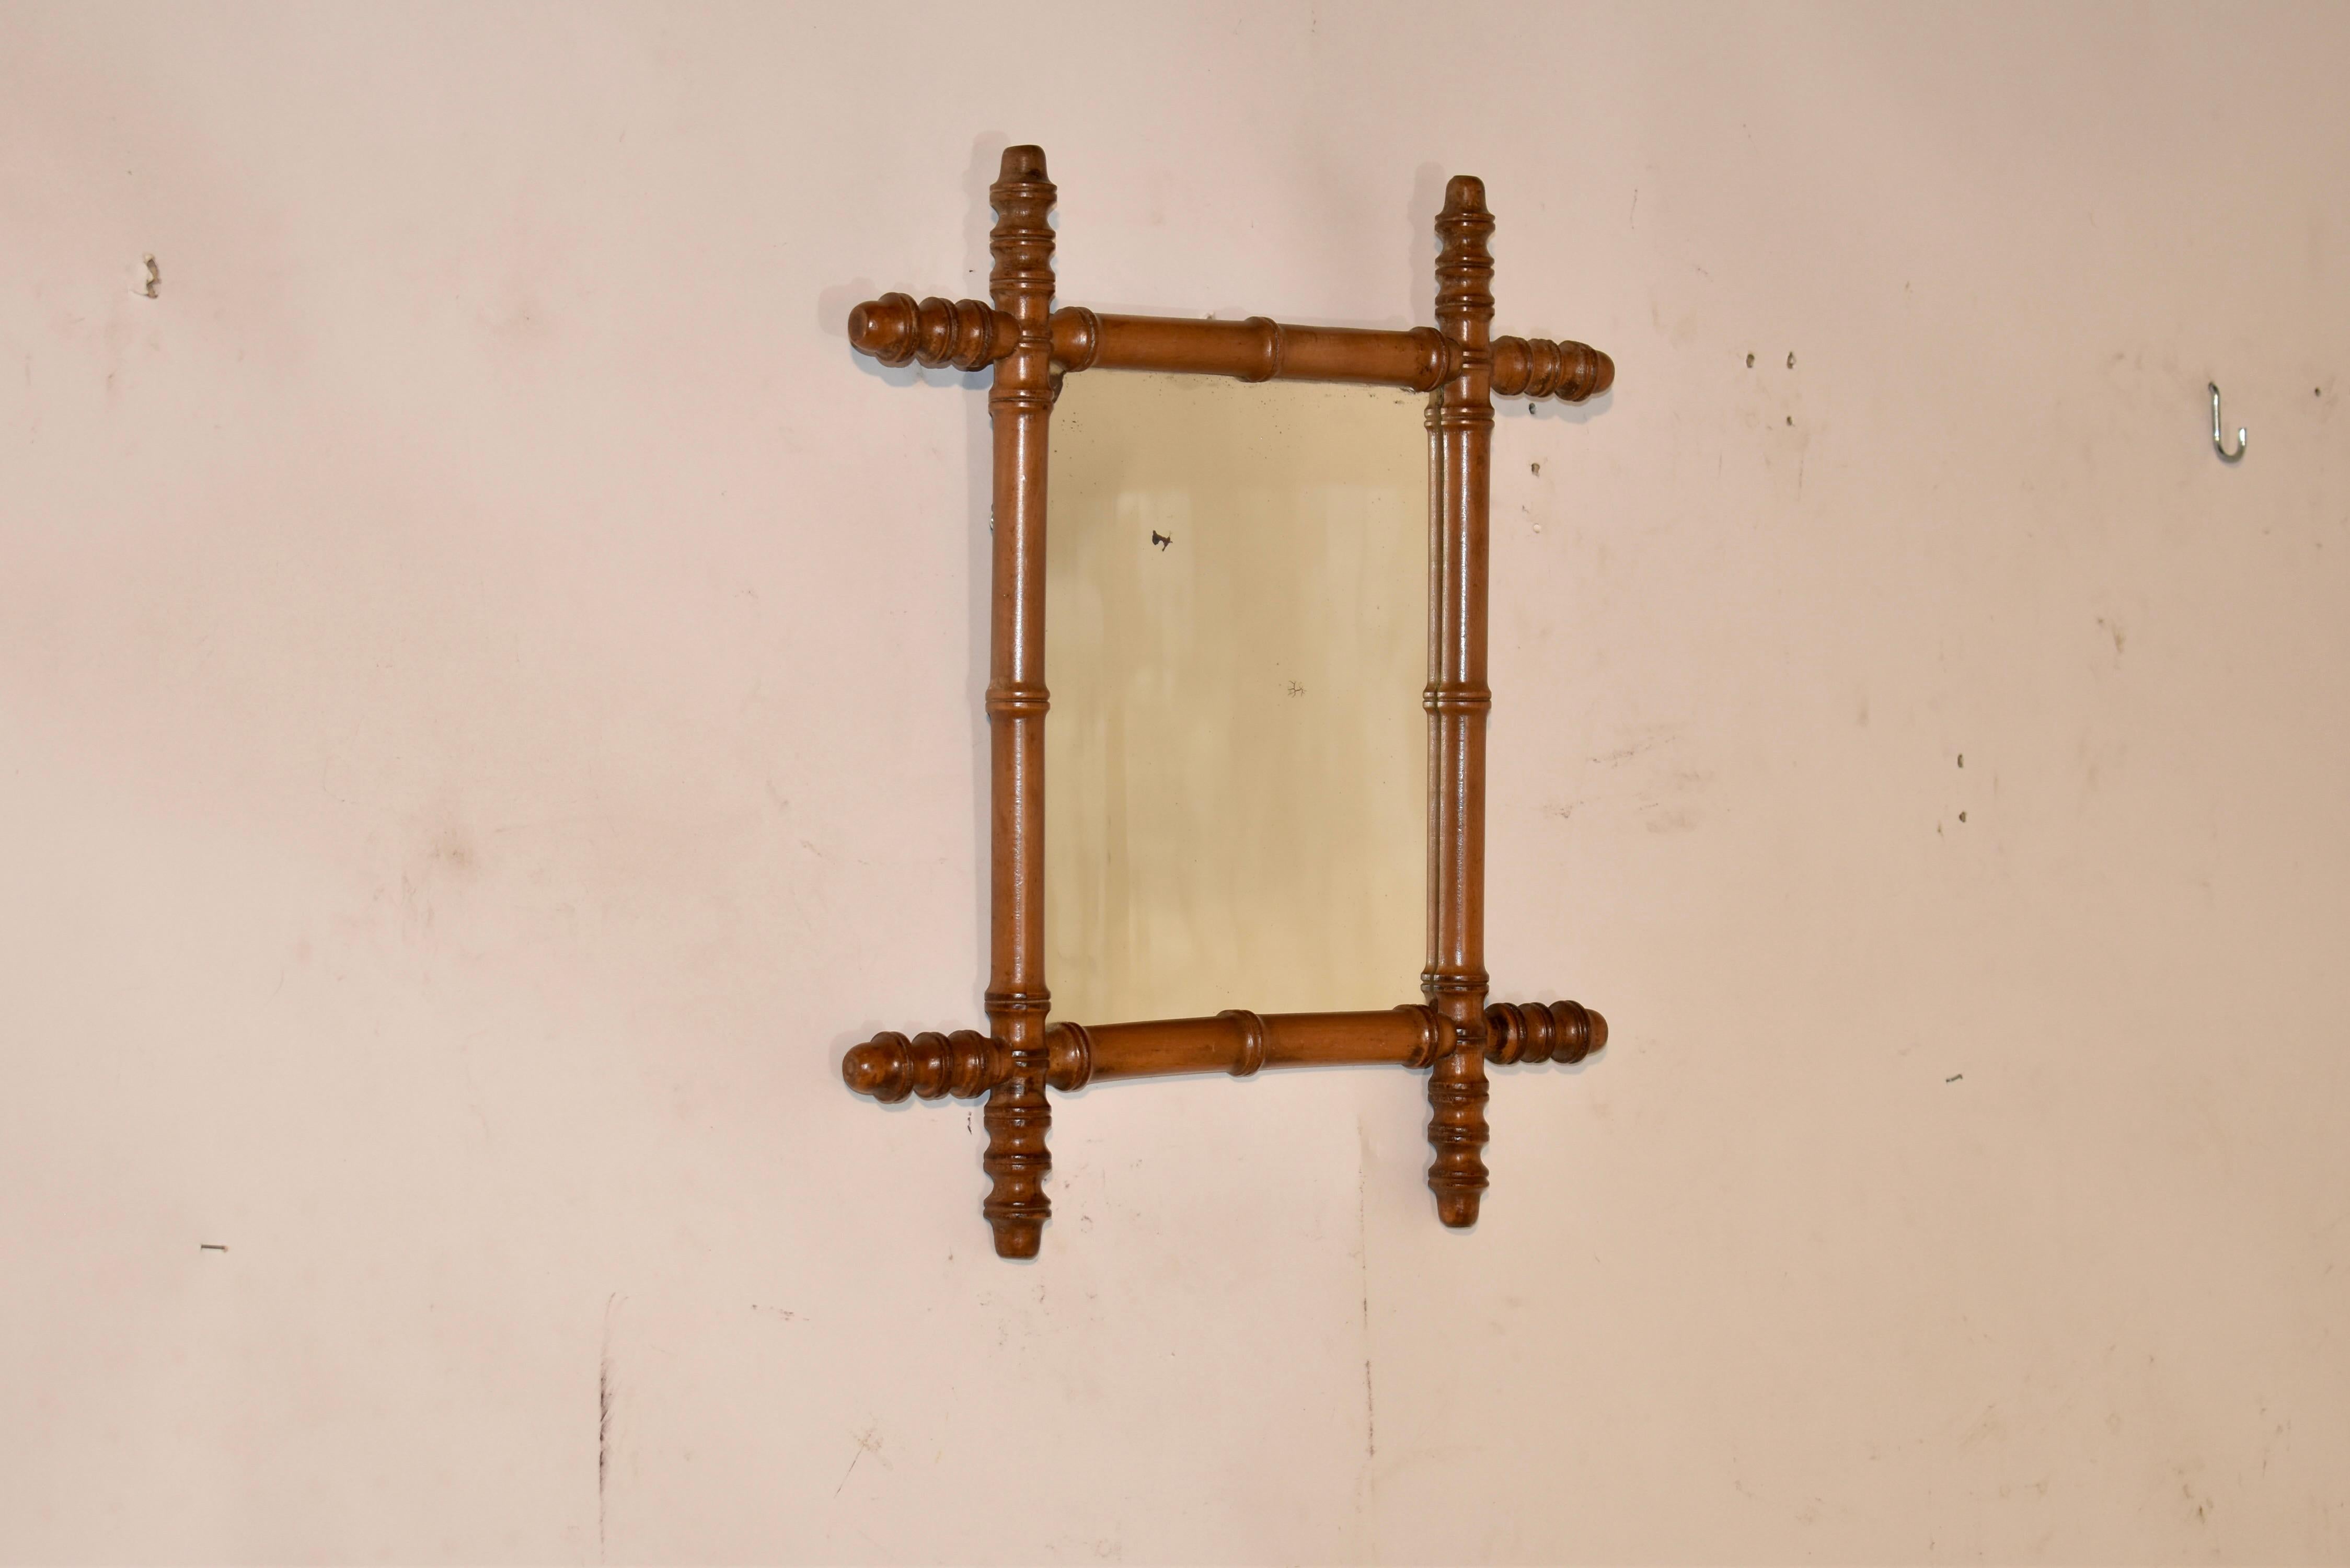 Miroir en cerisier du 19ème siècle provenant de France. Le cadre est en cerisier et tourné à la main pour ressembler à du bambou. Le cadre entoure un miroir qui semble être d'origine. Le miroir est usé, comme il est normal pour un miroir de cet âge,